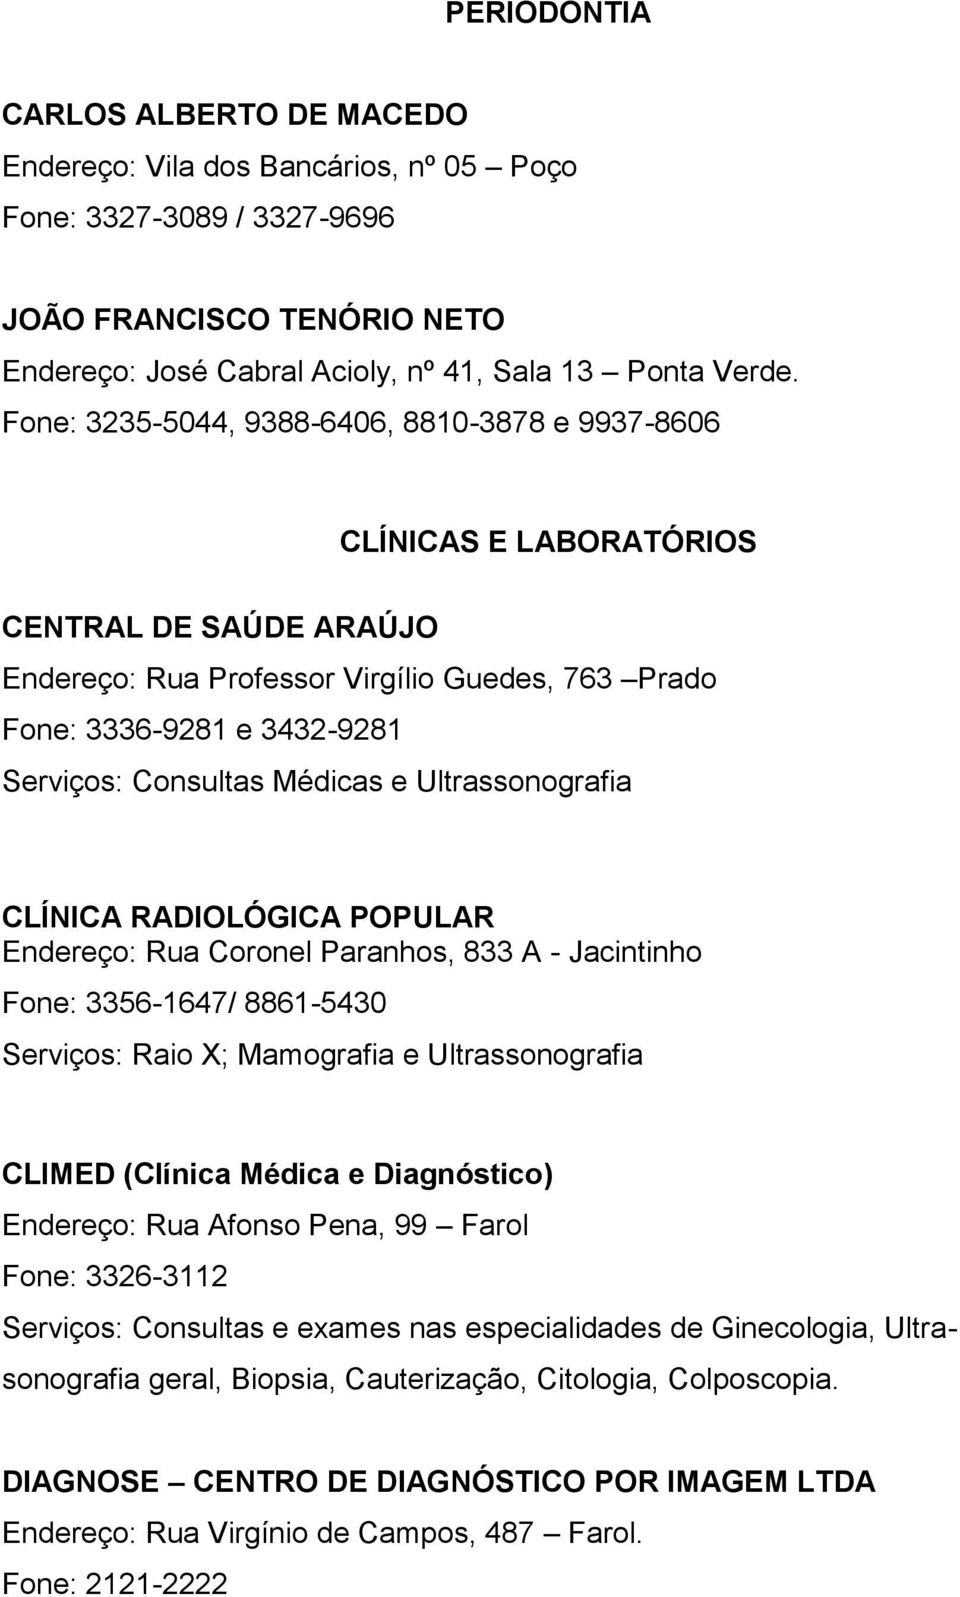 Médicas e Ultrassonografia CLÍNICA RADIOLÓGICA POPULAR Endereço: Rua Coronel Paranhos, 833 A - Jacintinho Fone: 3356-1647/ 8861-5430 Serviços: Raio X; Mamografia e Ultrassonografia CLIMED (Clínica